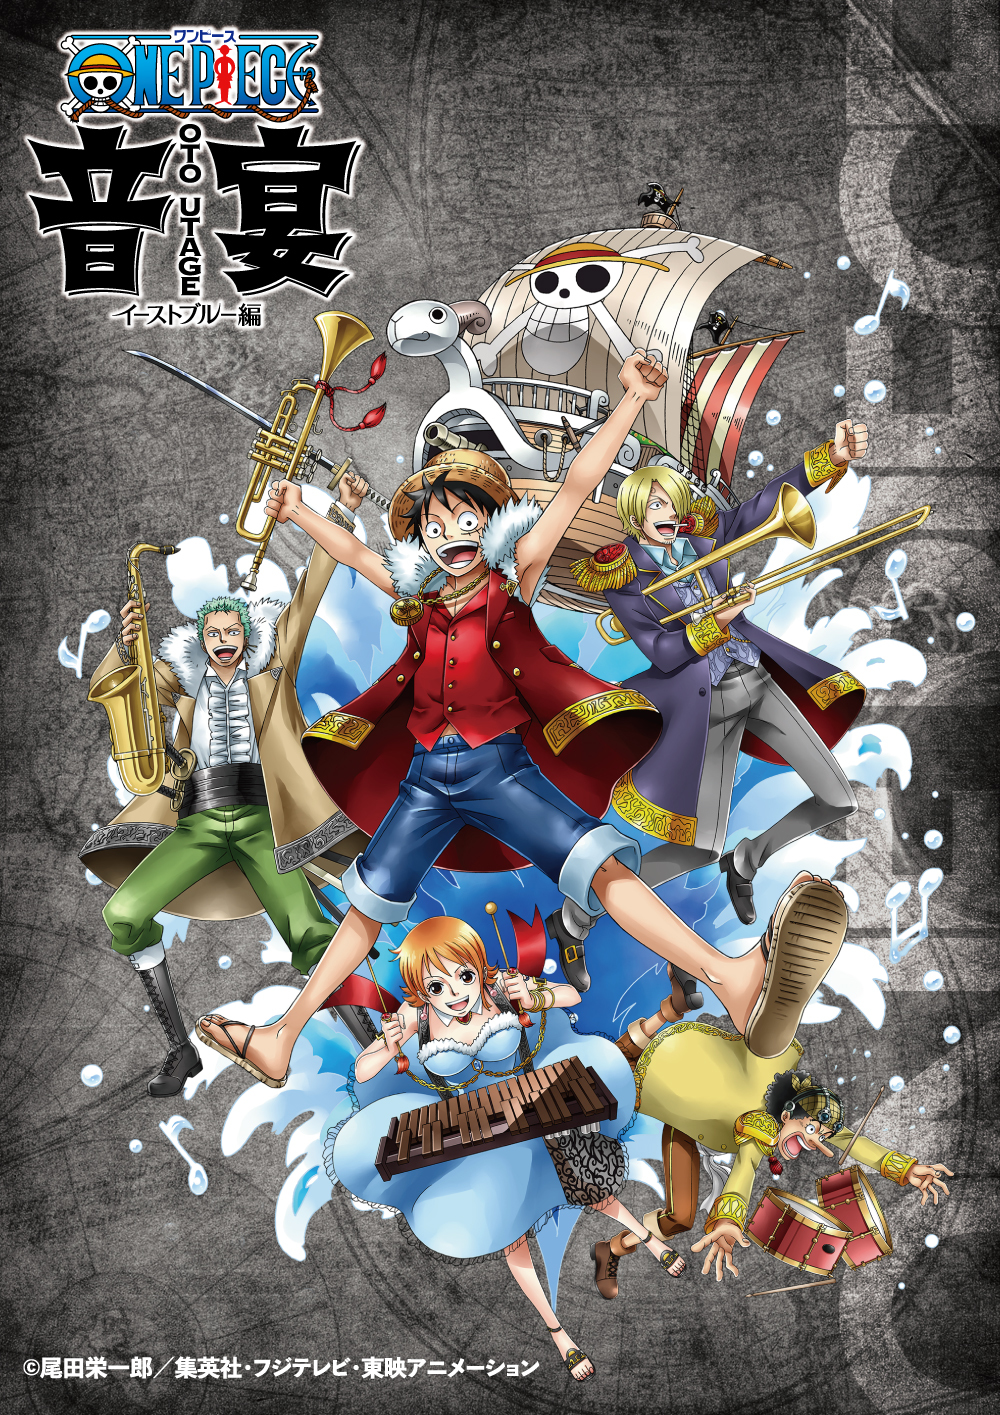 One Piece の名シーンが魂揺さぶる音楽とパフォーマンスで蘇る 世界初のブラス エンターテインメント誕生 Spice エンタメ特化型情報メディア スパイス